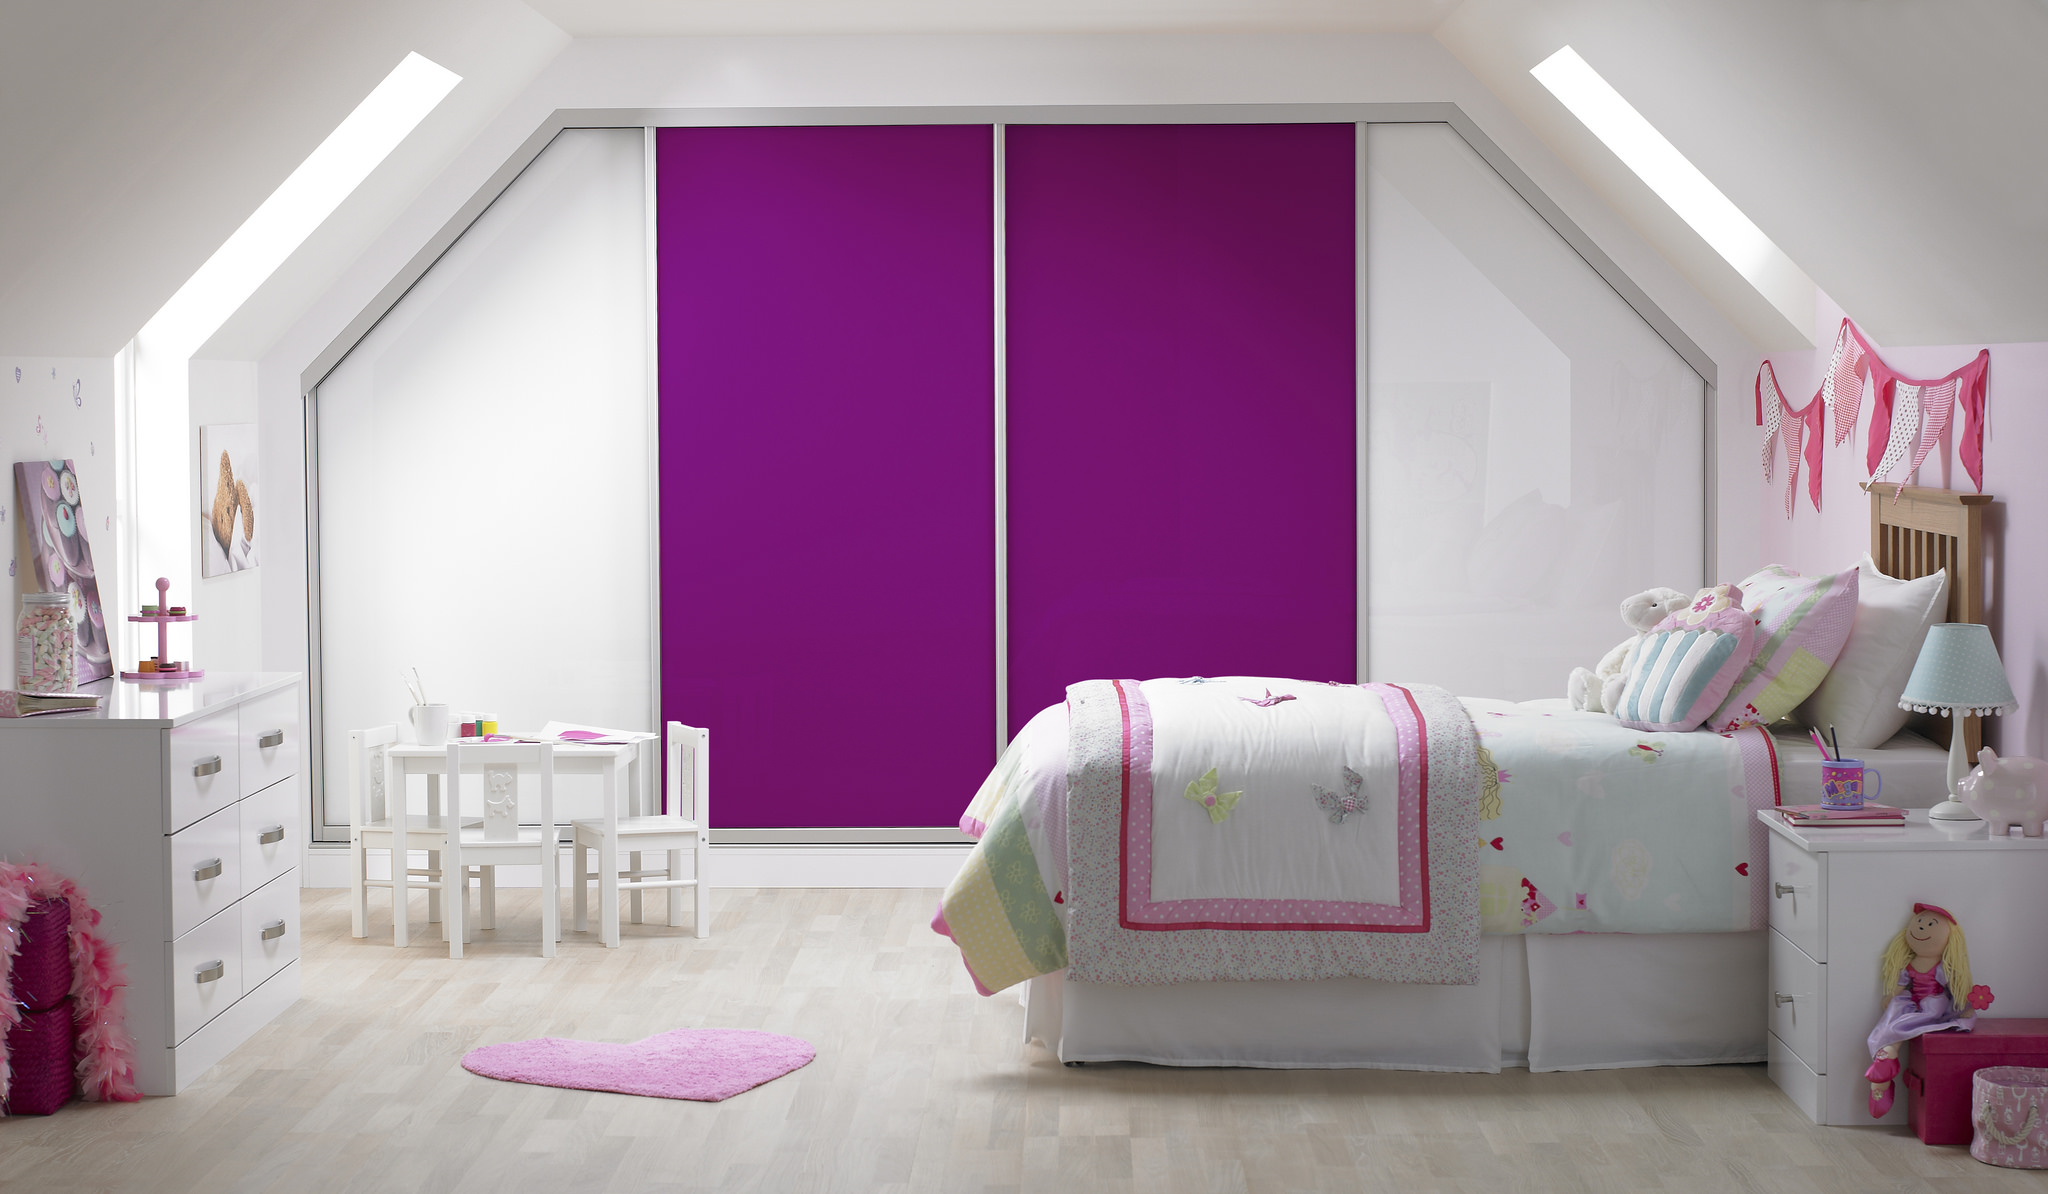  Top Ways To Make Your Child's Bedroom Look Outstanding!